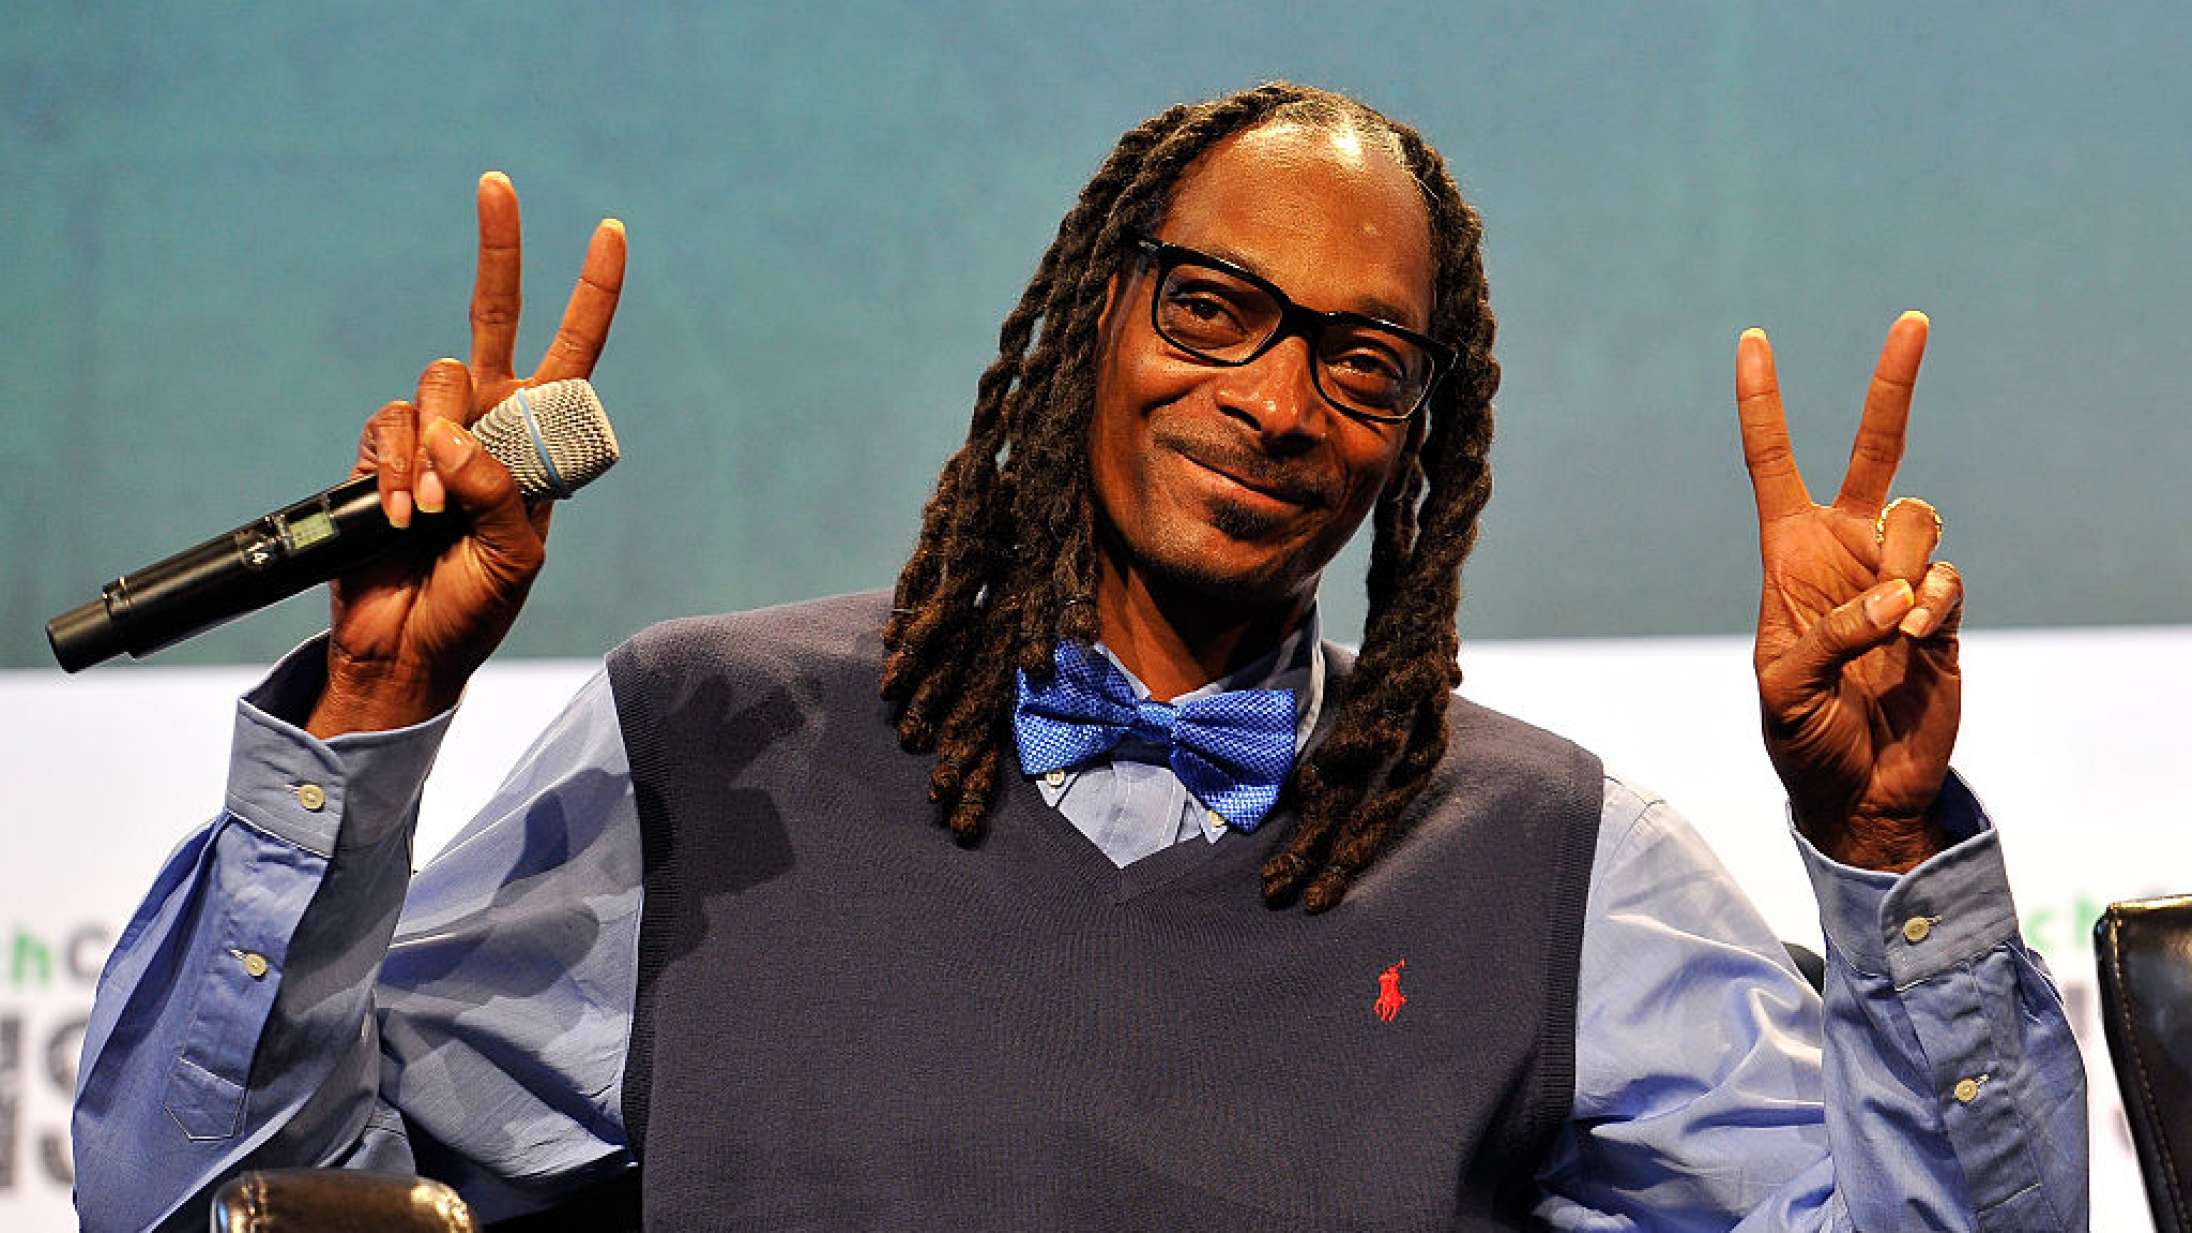 Snoop Dogg udfordrer Jay-Z til at battle om, hvem der har flest hits